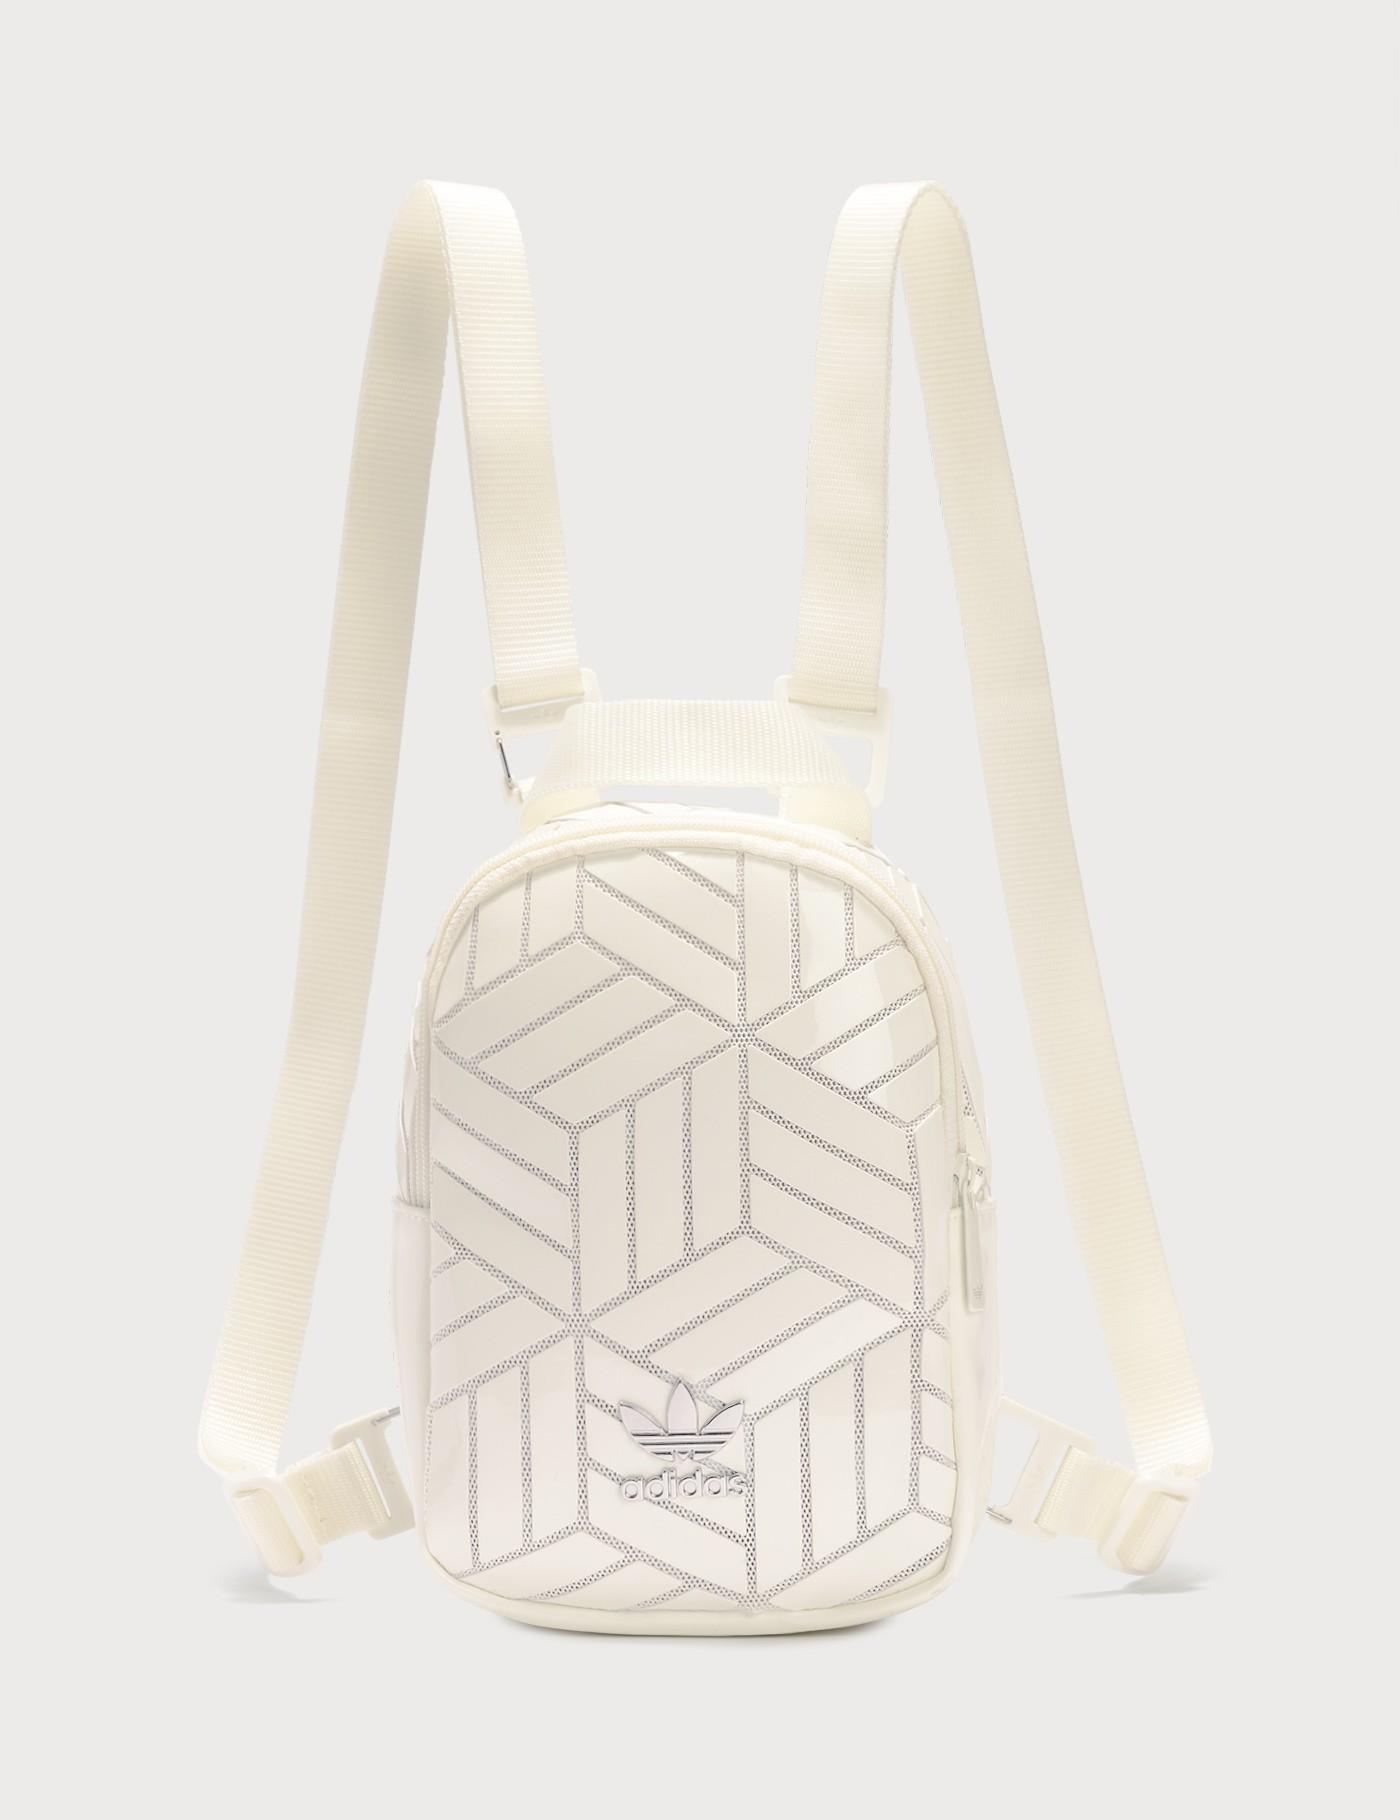 adidas mini backpack white